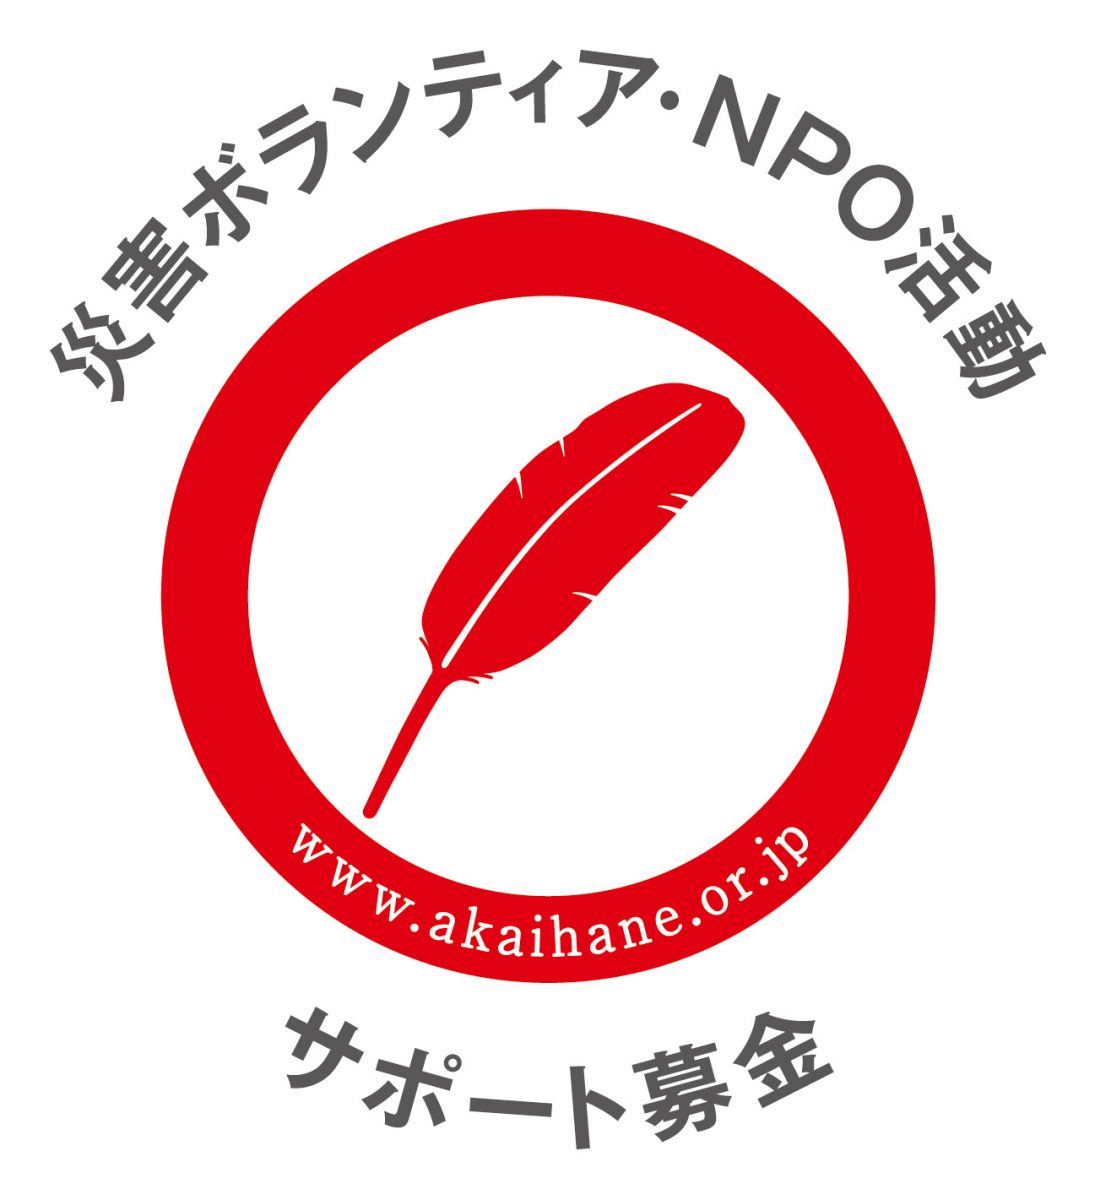 【中央共募助成】「ボラサポ・令和4年3月福島県沖地震」(災害支援金)の 寄付受付が開始されました